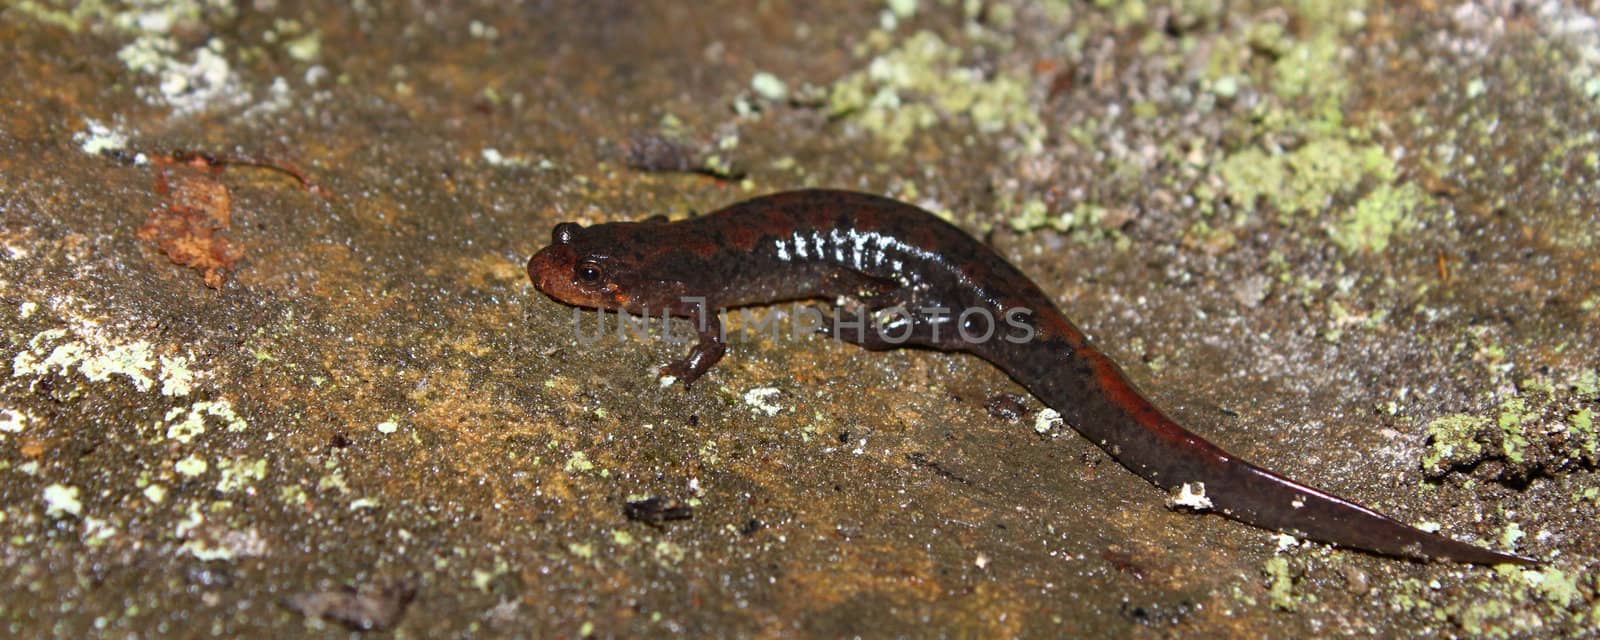 Dusky Salamander (Desmognathus conanti) by Wirepec